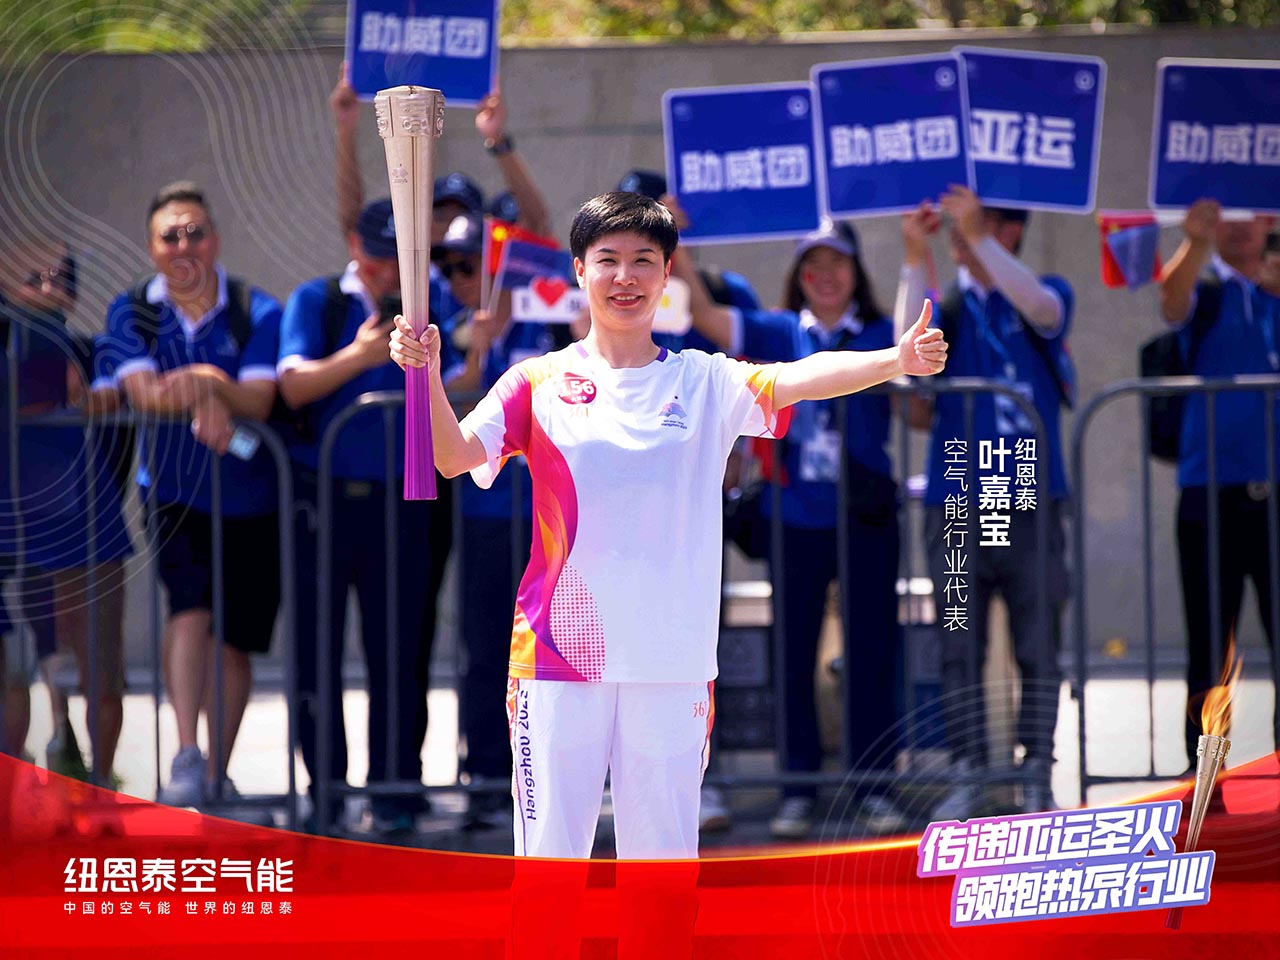 杭州亚运会官方供应商尊龙凯时人生就是搏叶嘉宝空气能行业代表领跑第156棒 助力亚运 节能高效